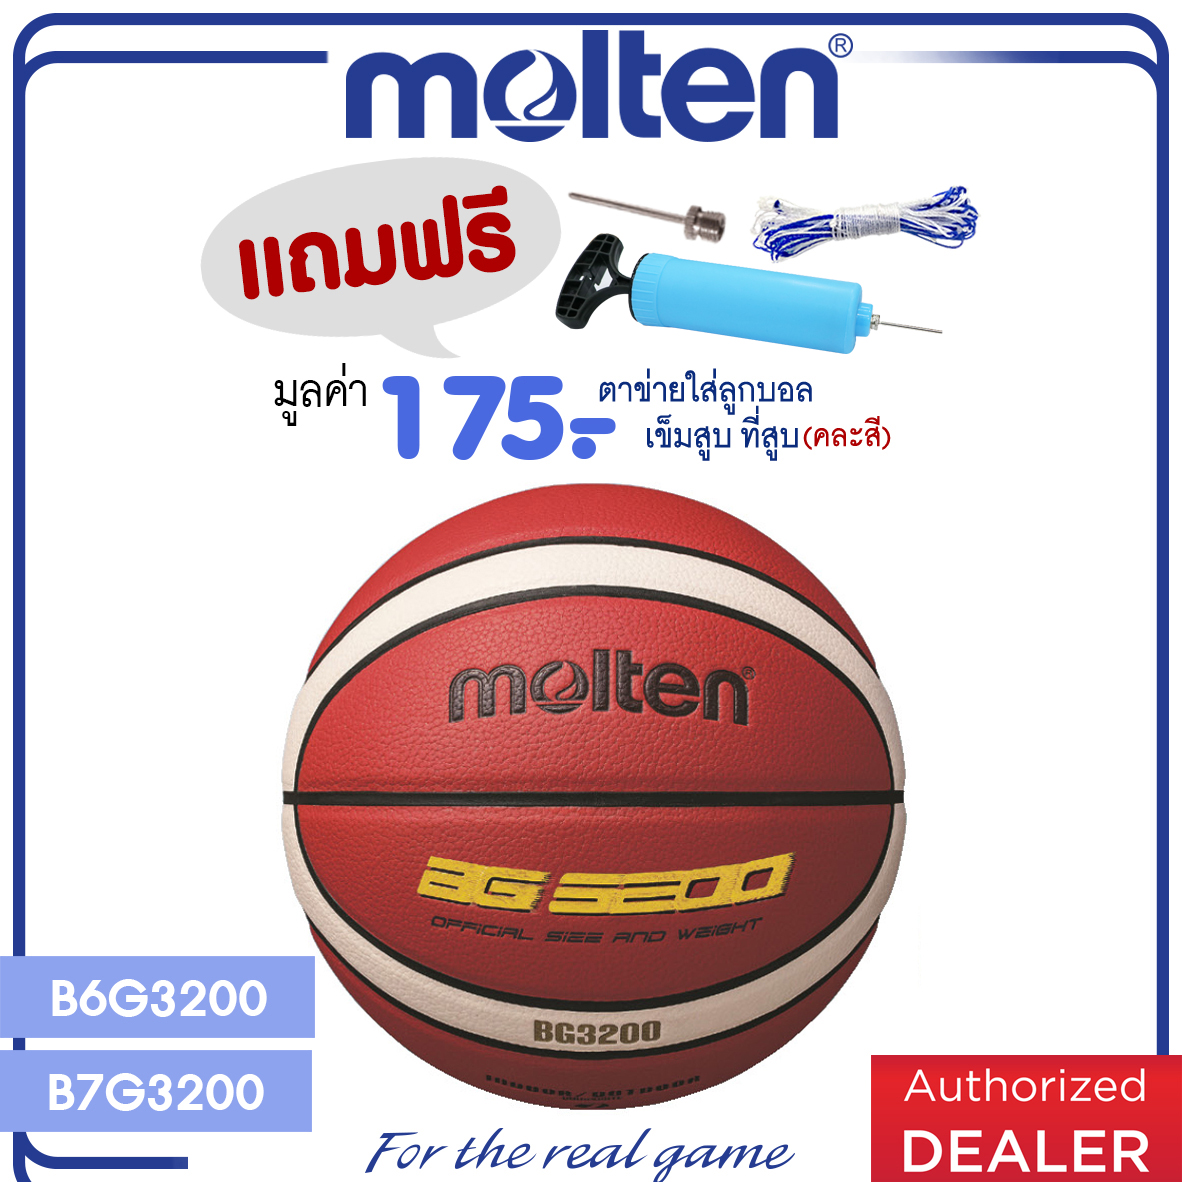 Molten ลูกบาสเก็ตบอลหนัง Basketball PU B6G3200 เบอร์ 6 / B7G3200 เบอร์ 7 (แถมฟรี ตาข่ายใส่ลูกบอล+เข็บสูบ+ที่สูบ)